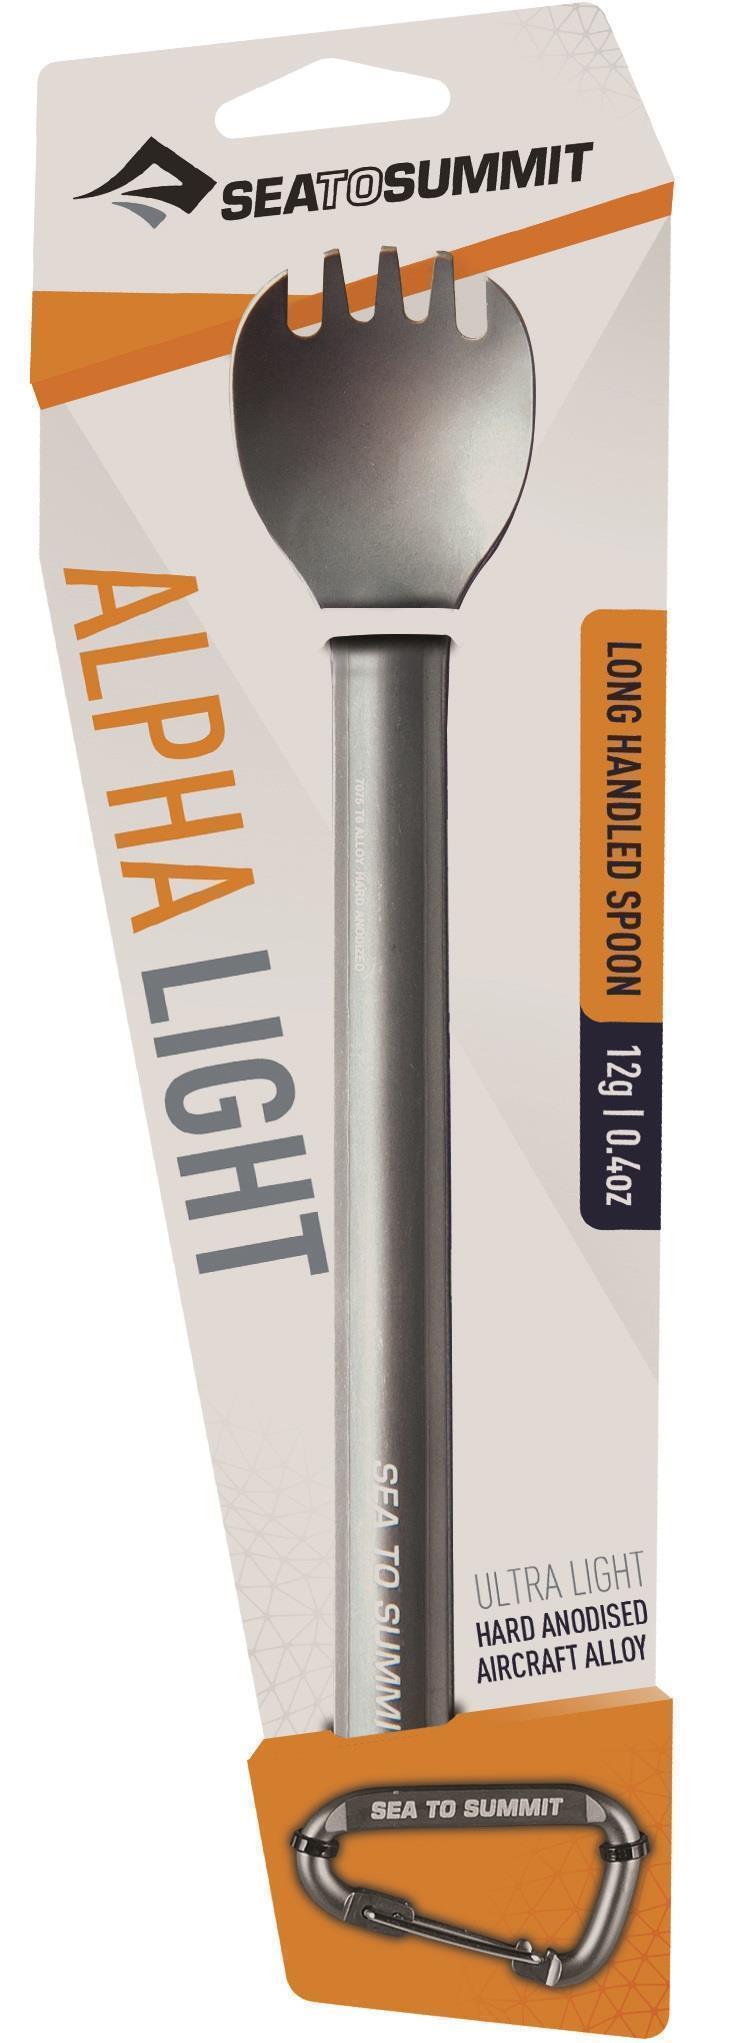 Alpha Light Long Spork